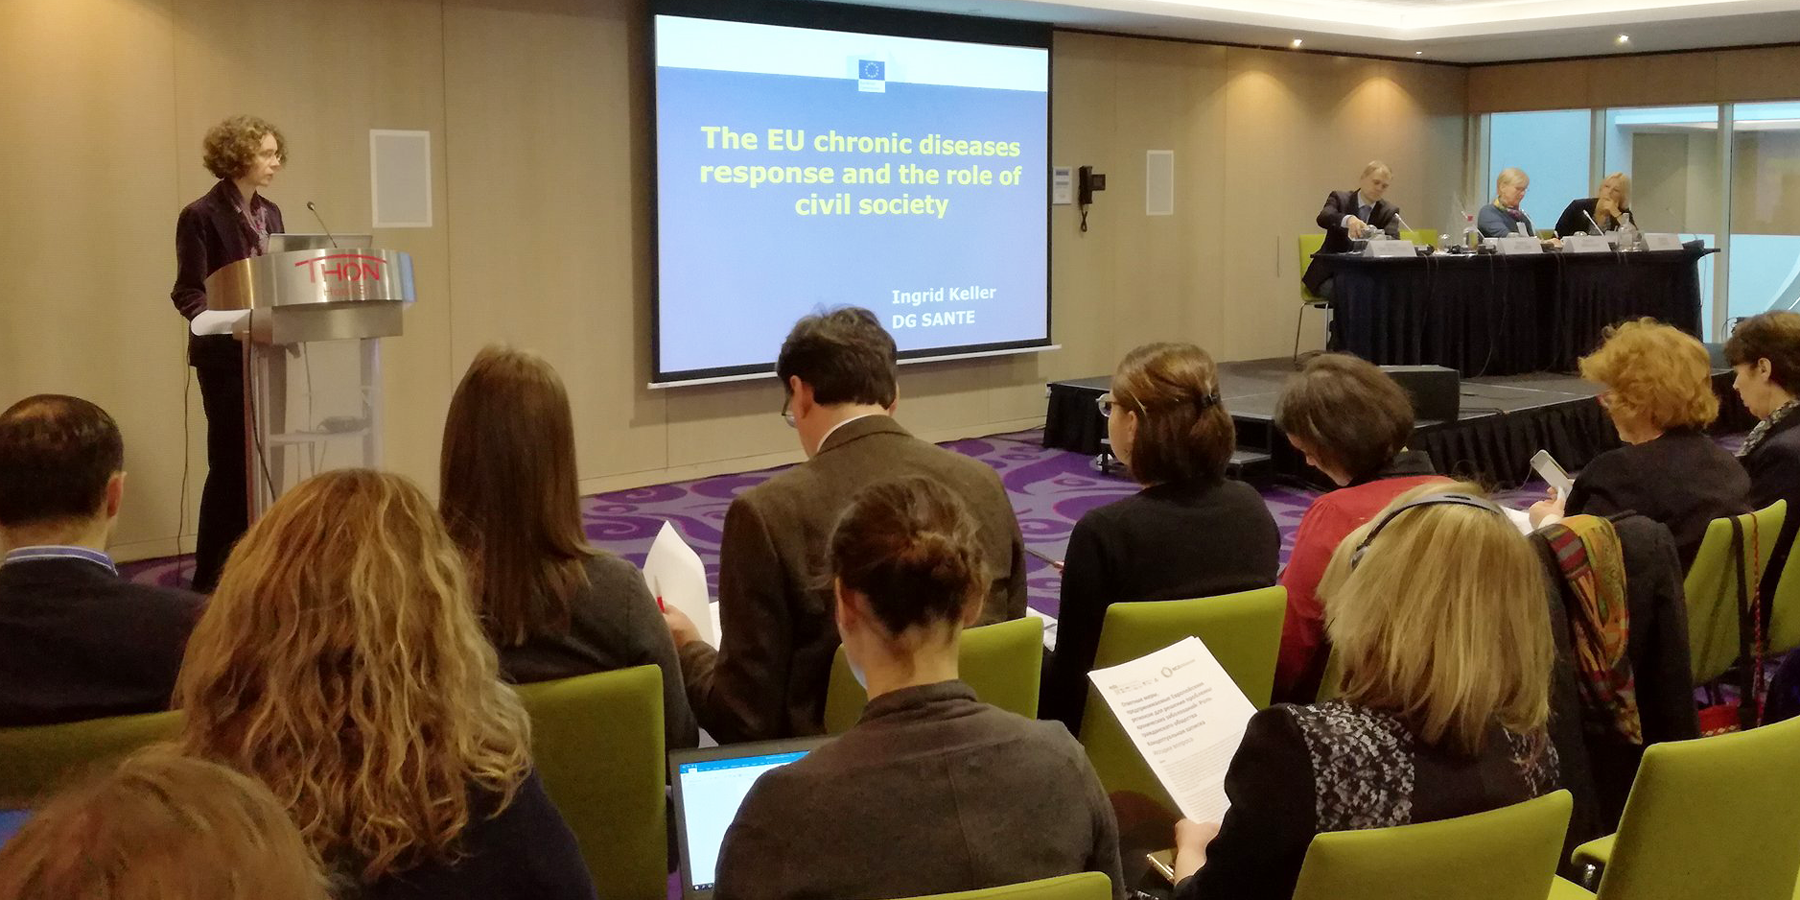 Ingrid Keller speaks on civil society NCD reponse in the European Region